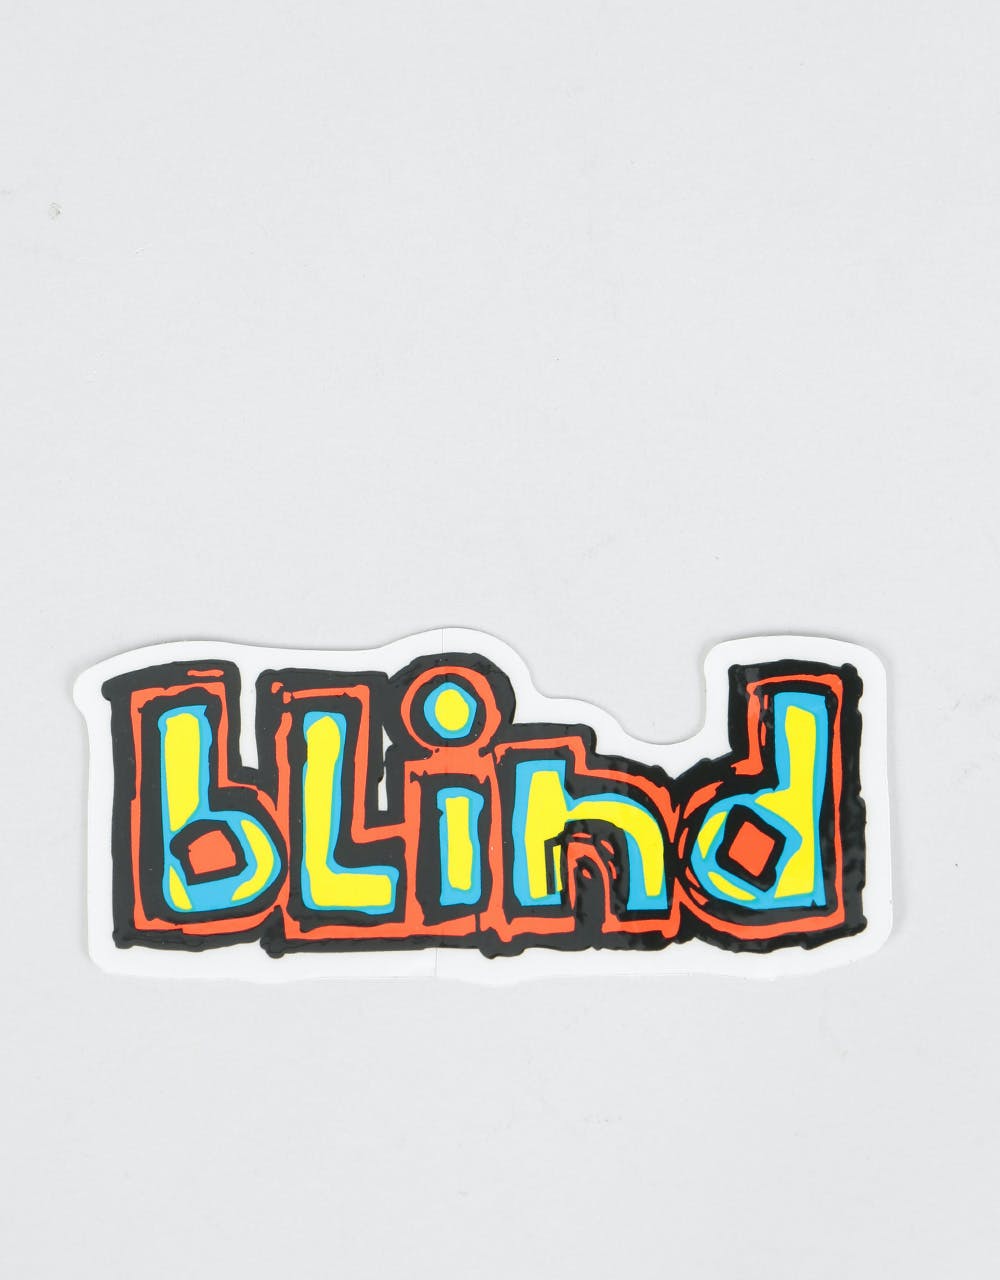 Blind Classic OG Sticker